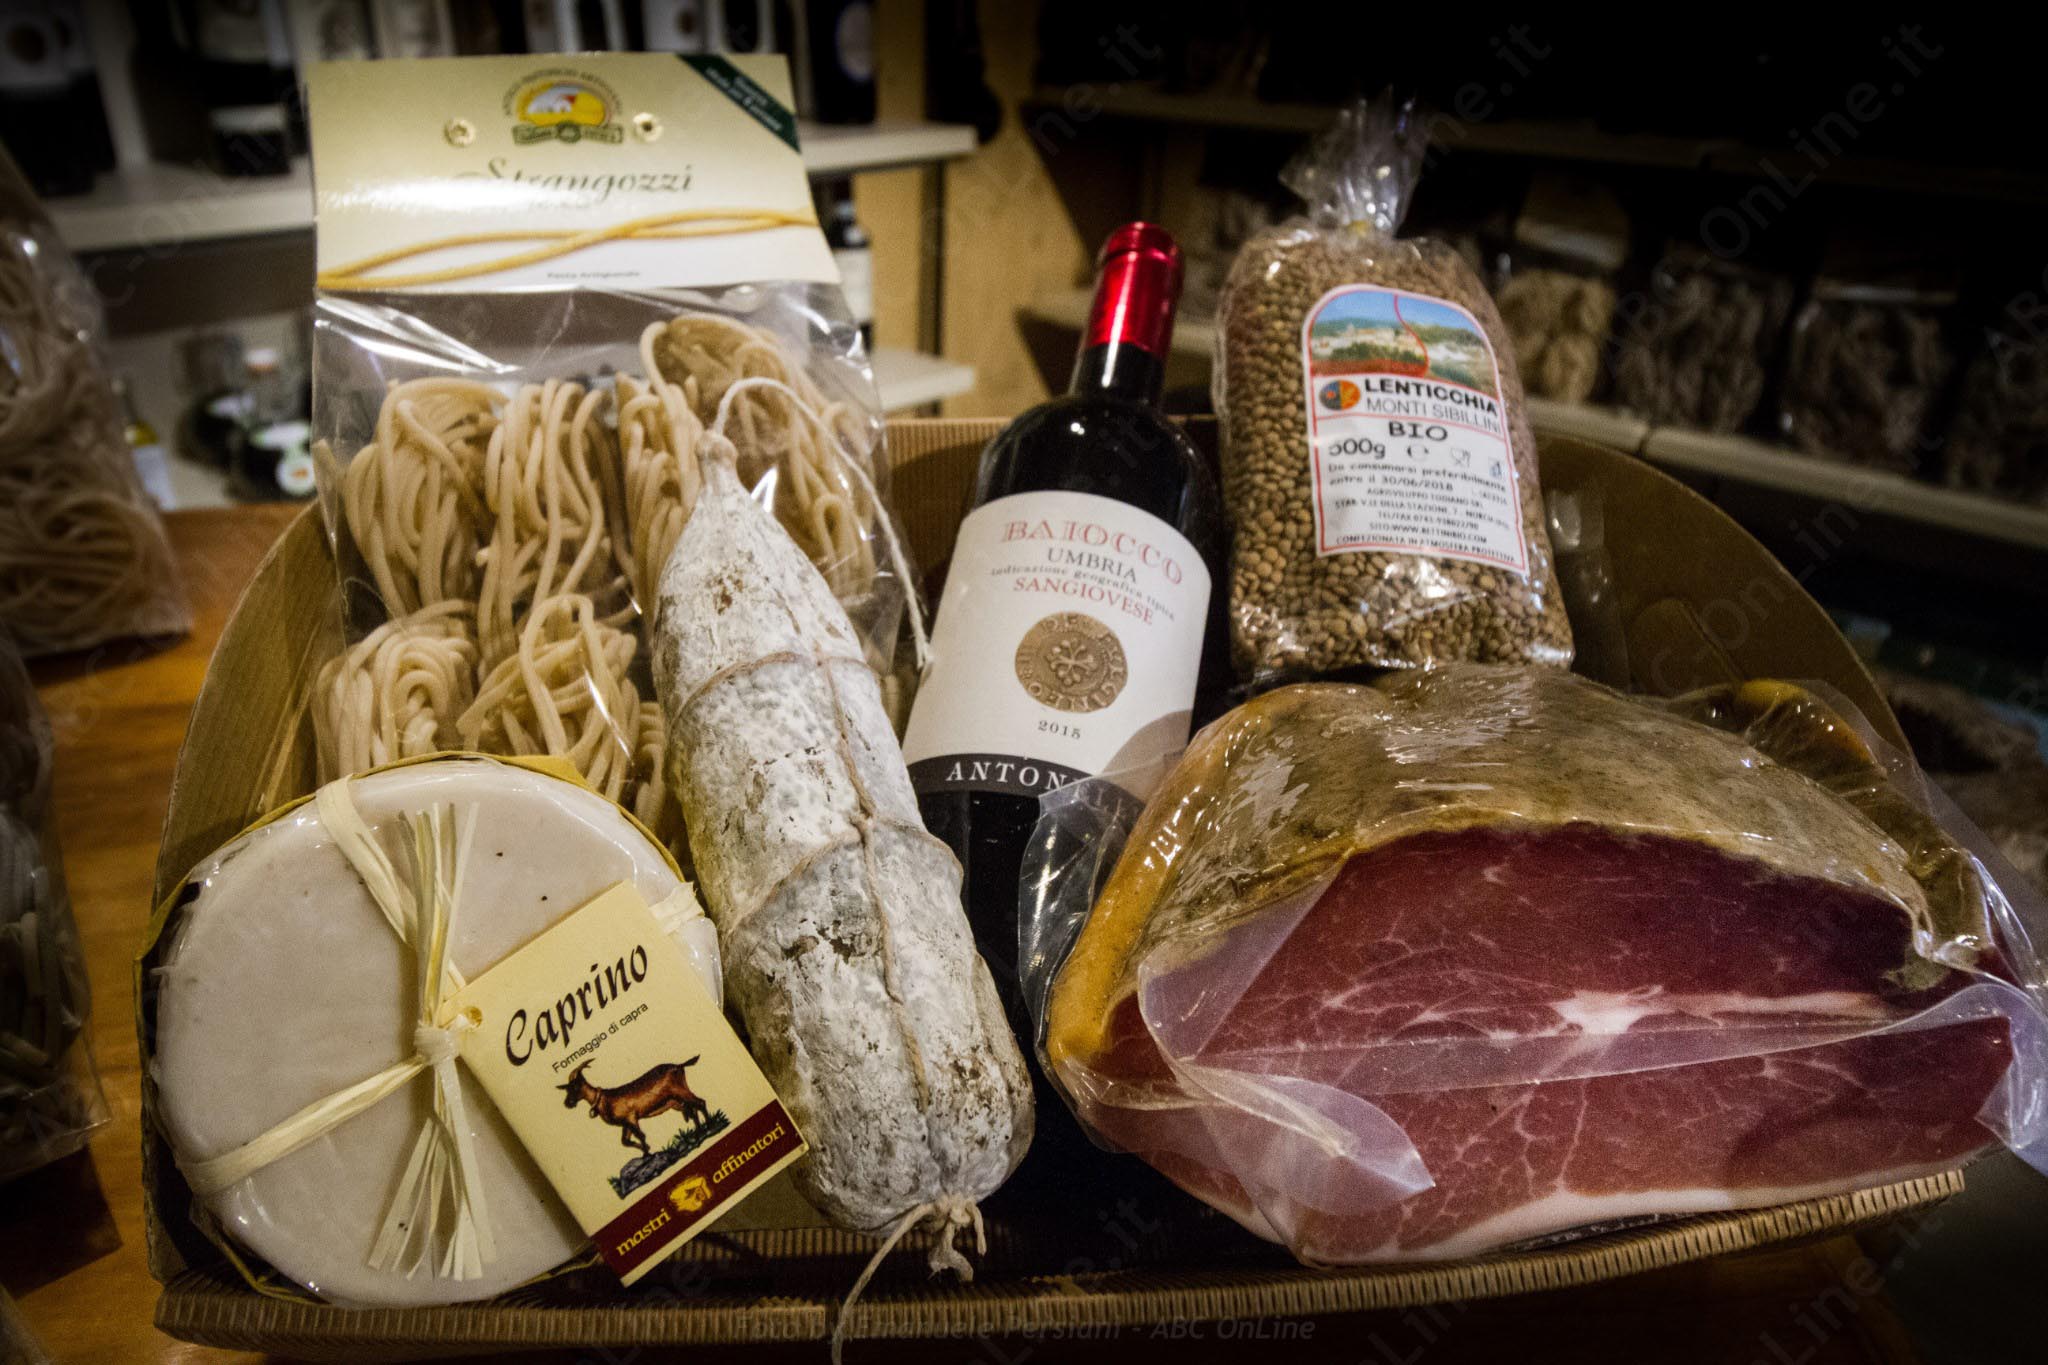 Un italiano su quattro sceglie cibo e vino come regalo di natale